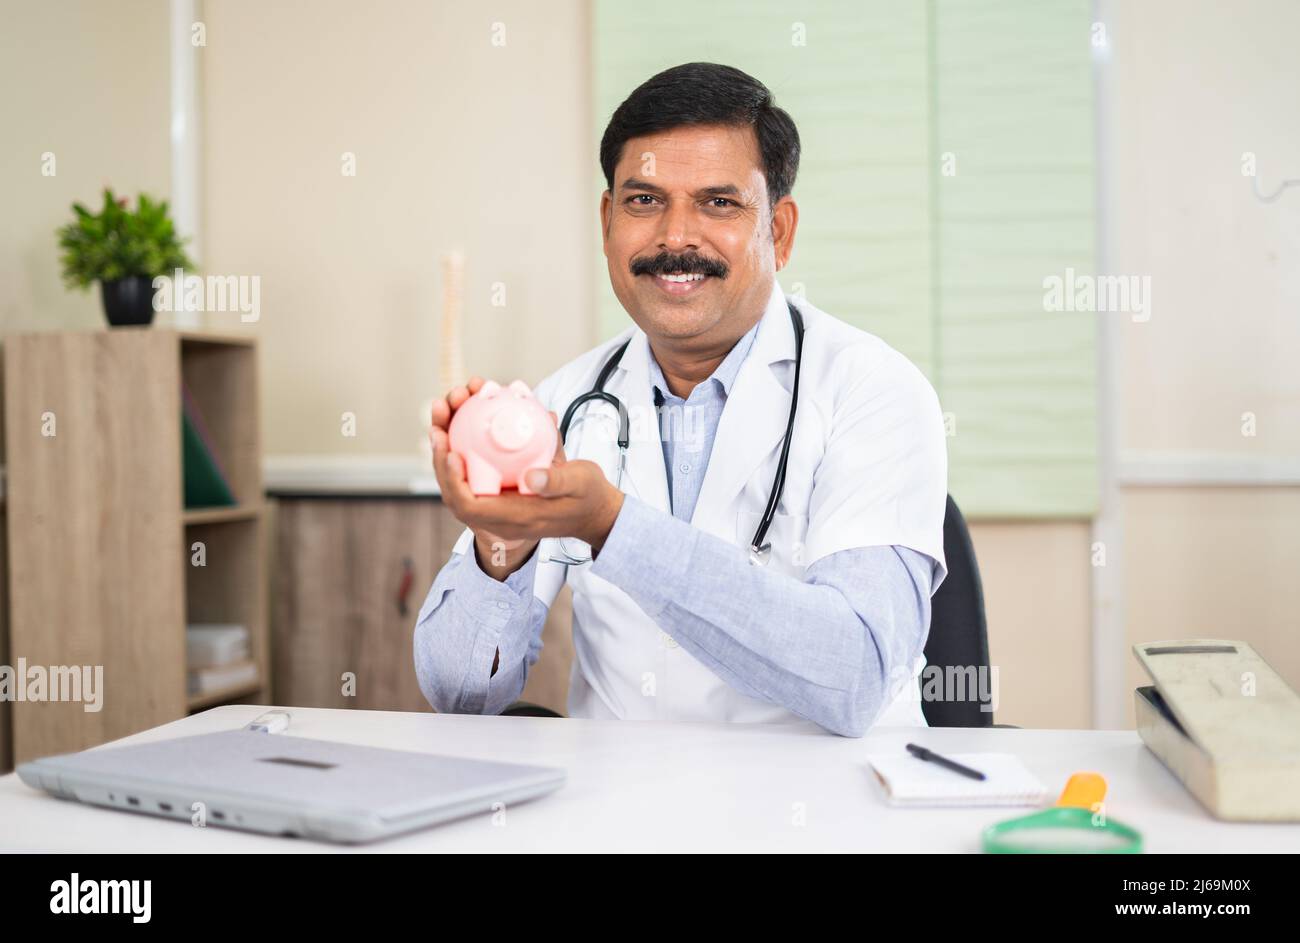 felice medico sorridente mostrando piggy banca in ospedale guardando la macchina fotografica - conept di healhcare, risparmi e assicurazione medica Foto Stock